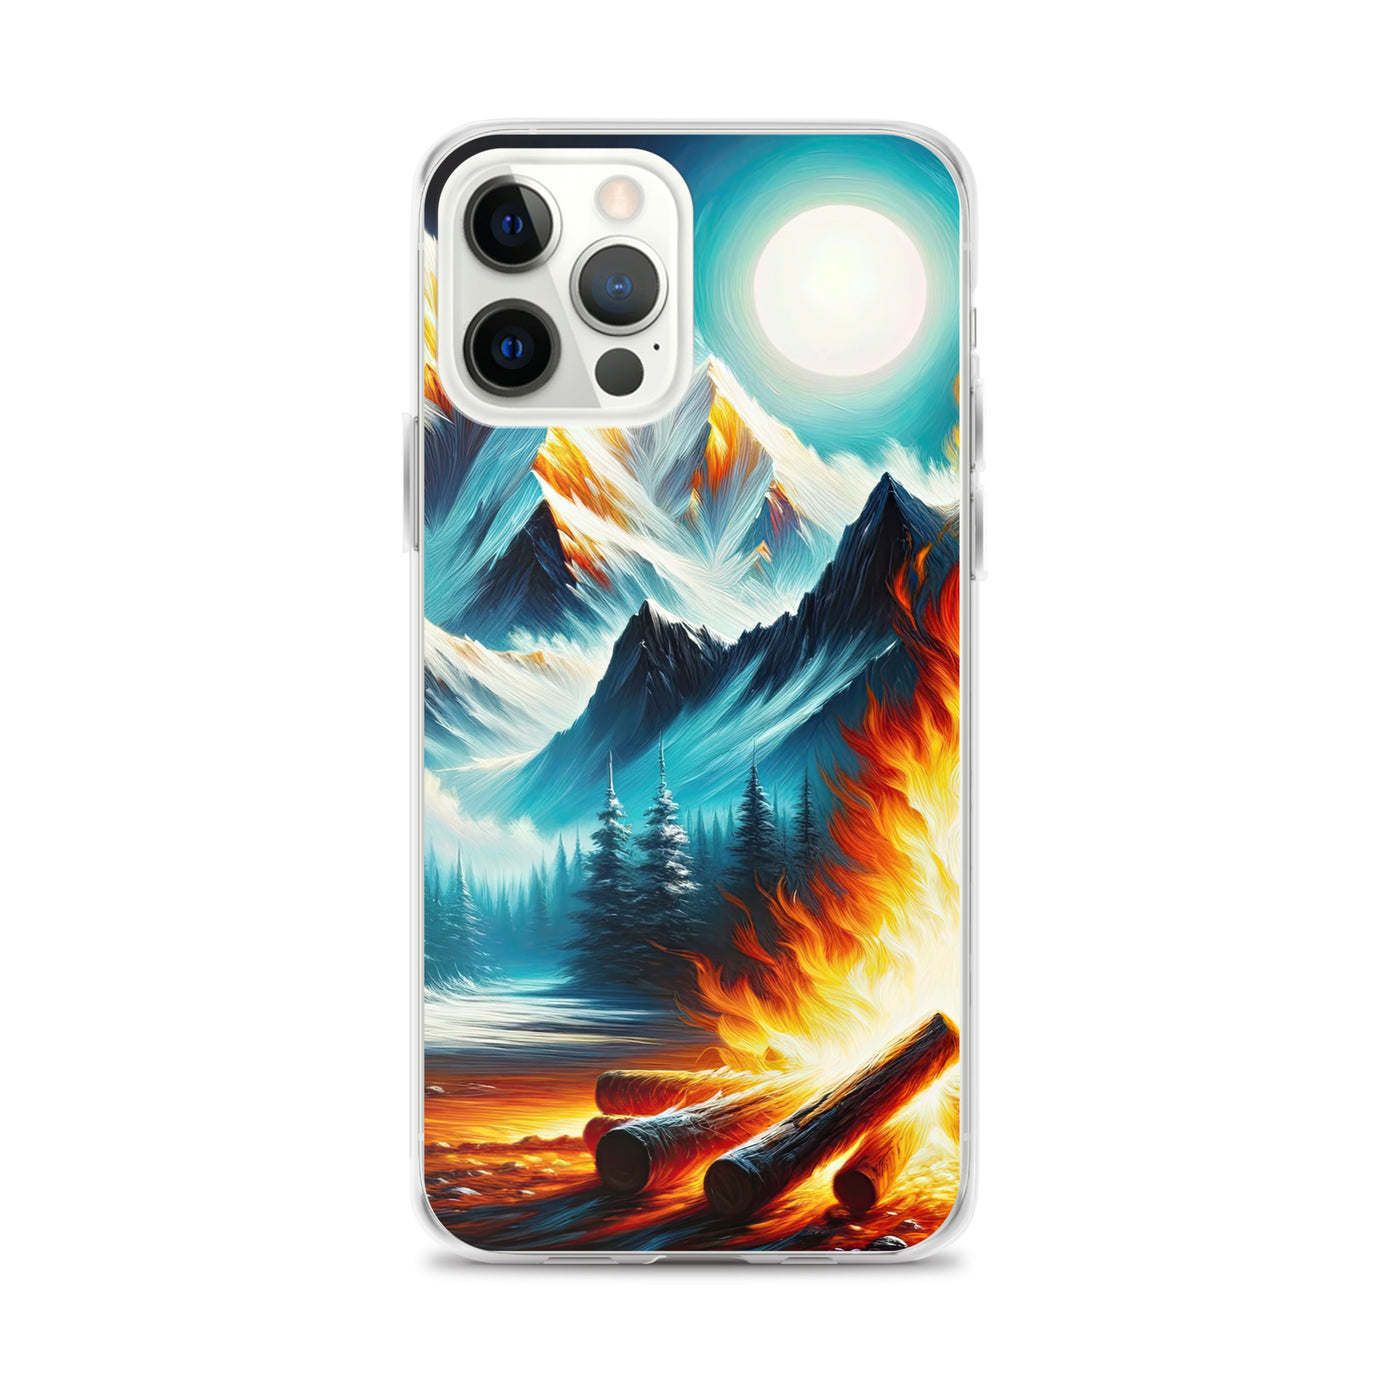 Ölgemälde von Feuer und Eis: Lagerfeuer und Alpen im Kontrast, warme Flammen - iPhone Schutzhülle (durchsichtig) camping xxx yyy zzz iPhone 12 Pro Max